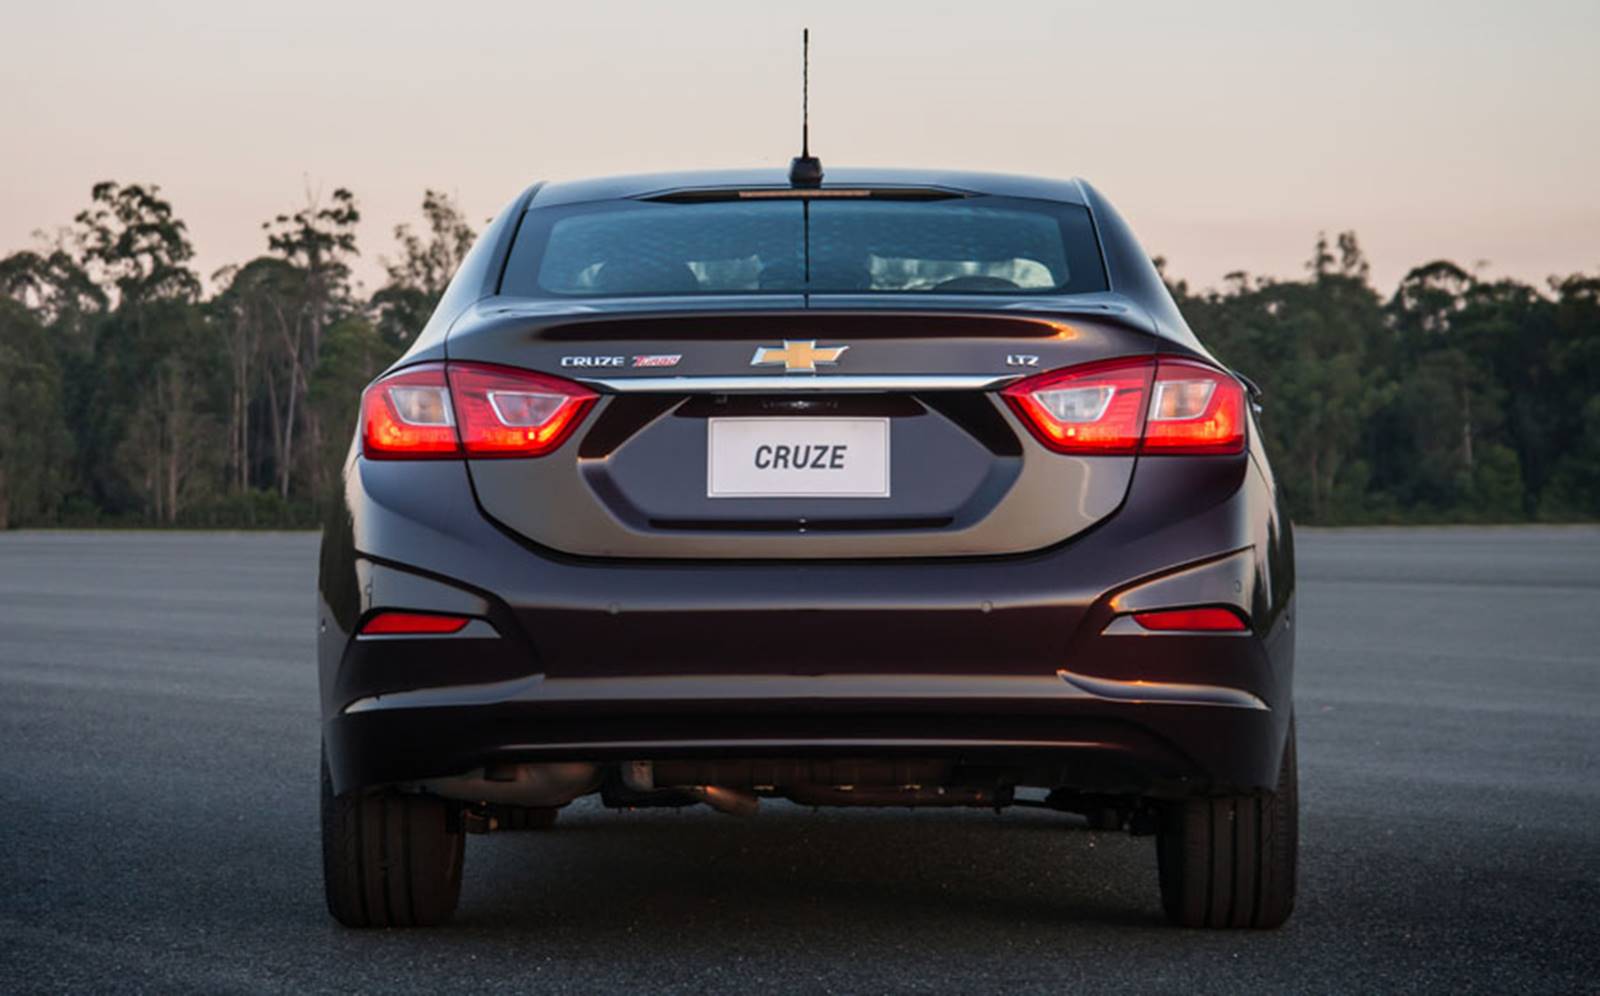 Novo Chevrolet Cruze 2017: preços oficiais e consumo